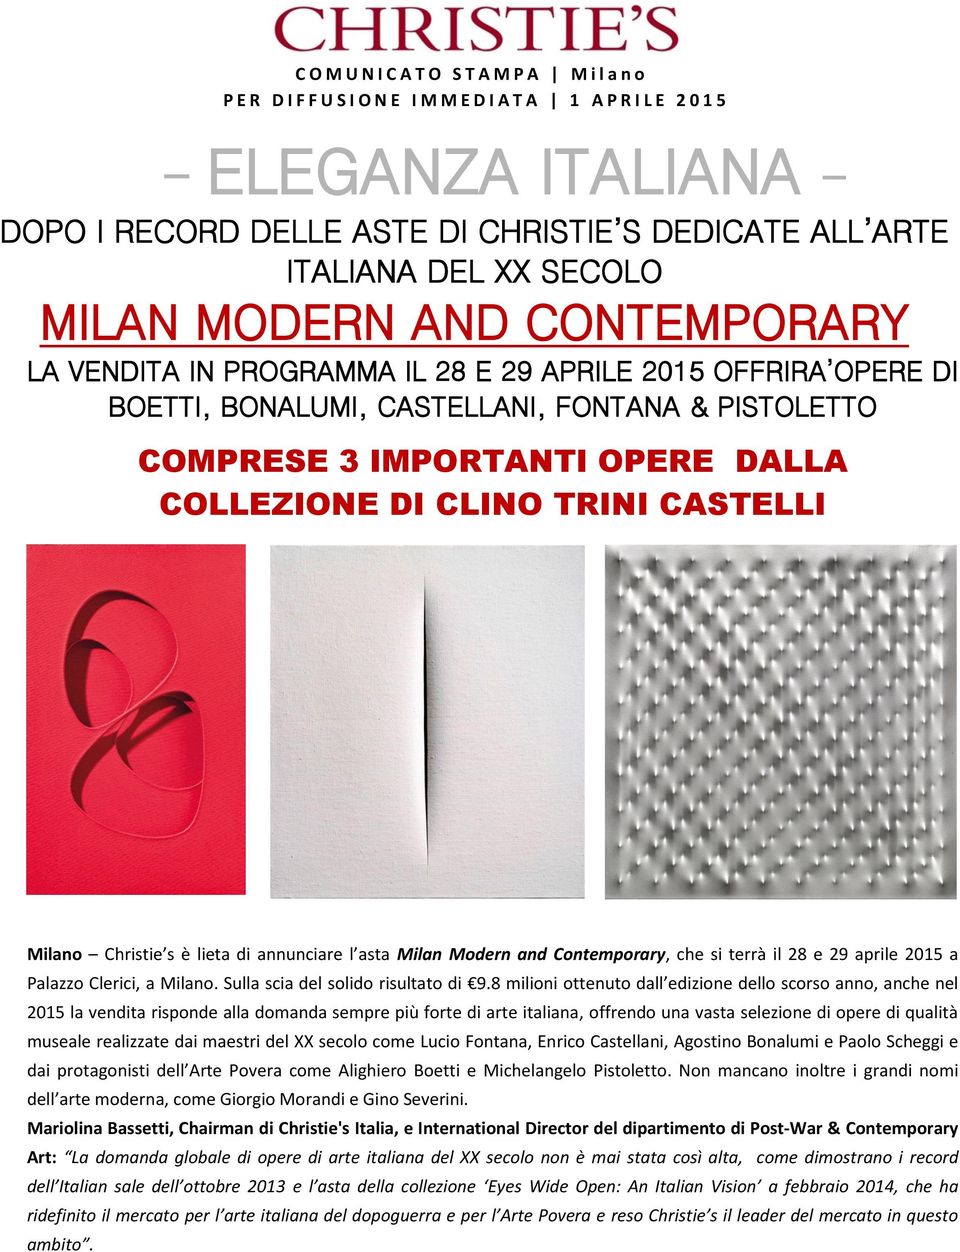 COLLEZIONE DI CLINO TRINI CASTELLI Milano Christie s è lieta di annunciare l asta Milan Modern and Contemporary, che si terrà il 28 e 29 aprile 2015 a Palazzo Clerici, a Milano.